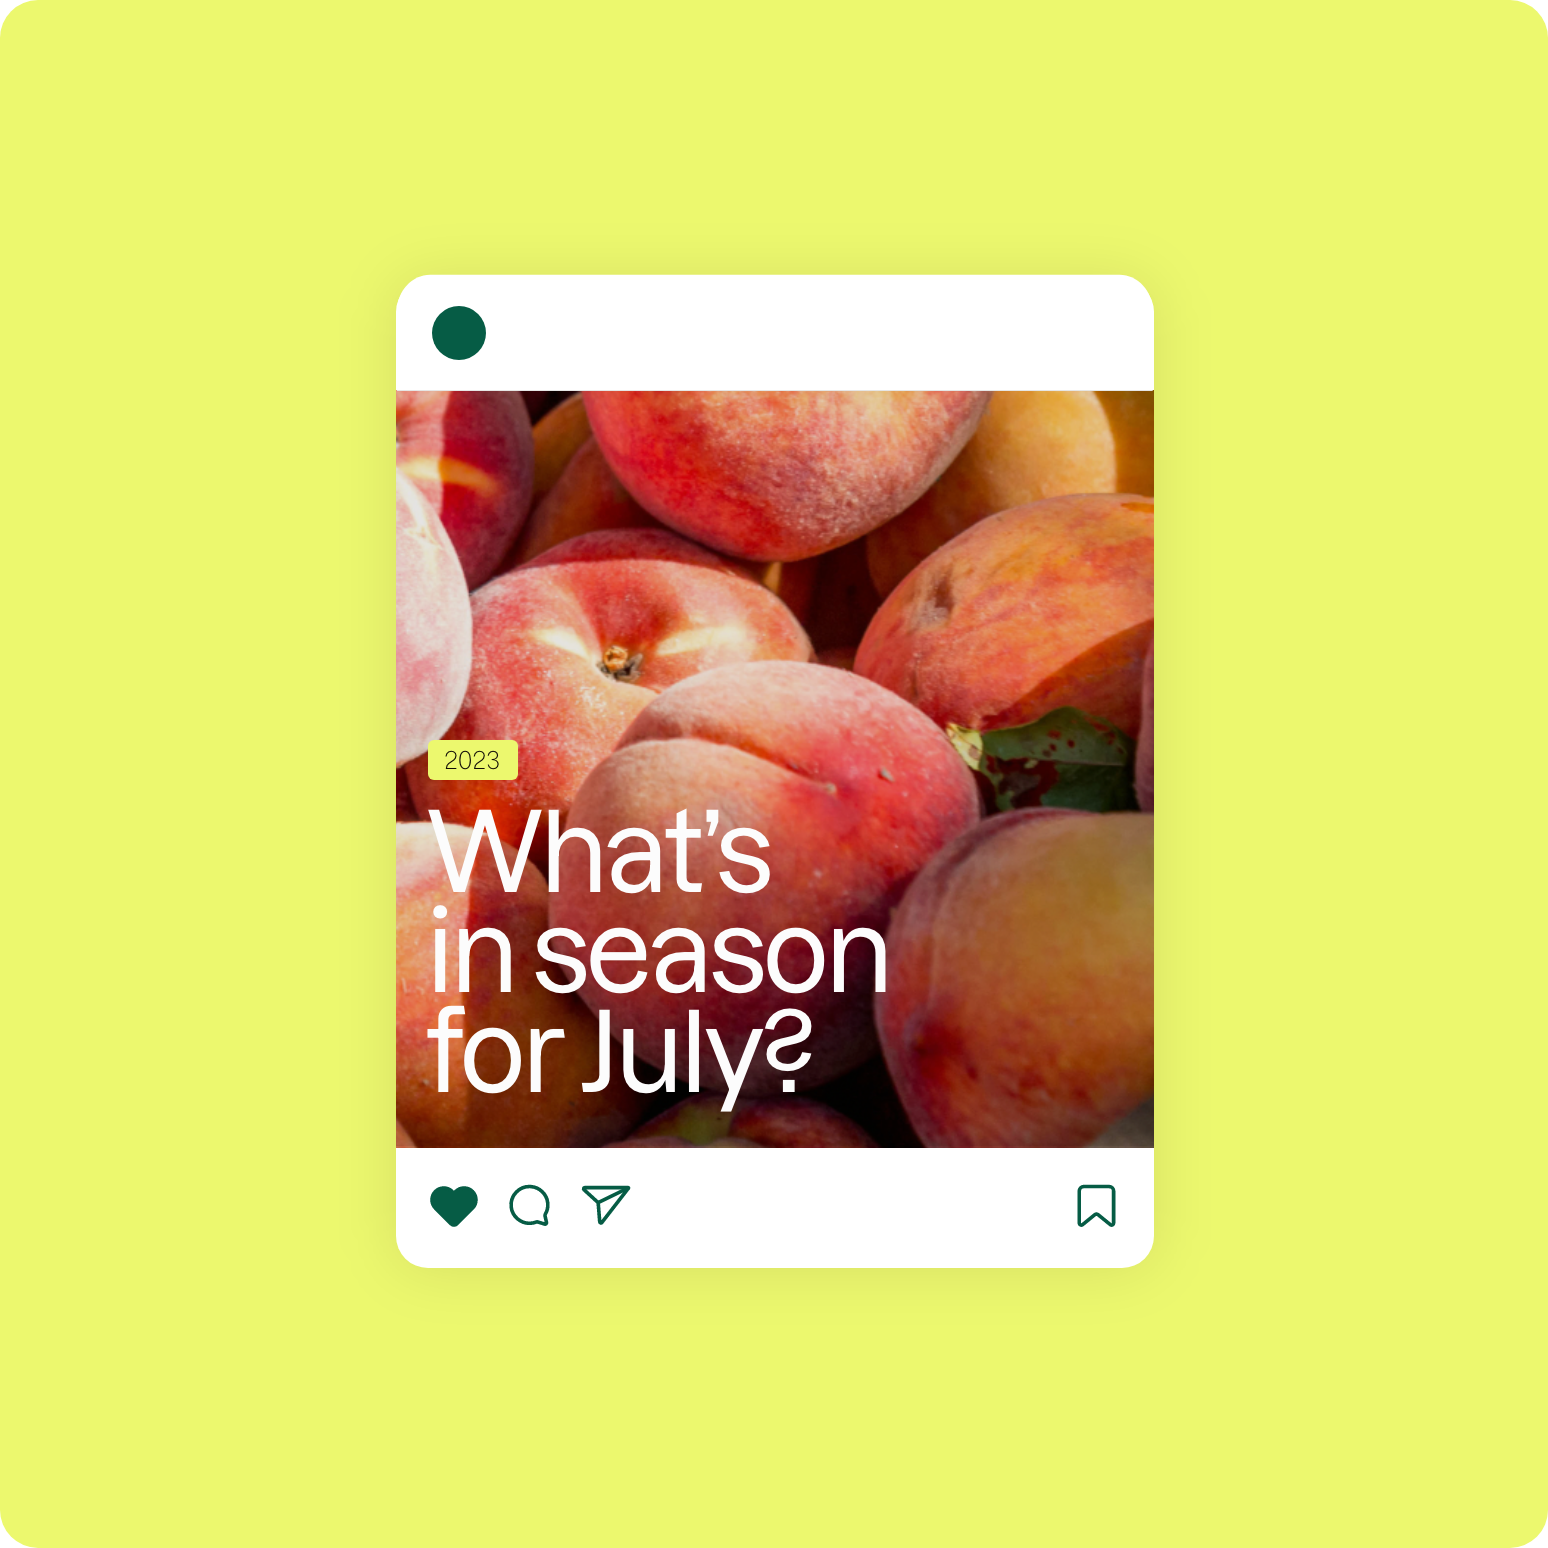 Klim social media post showing what is in season in July